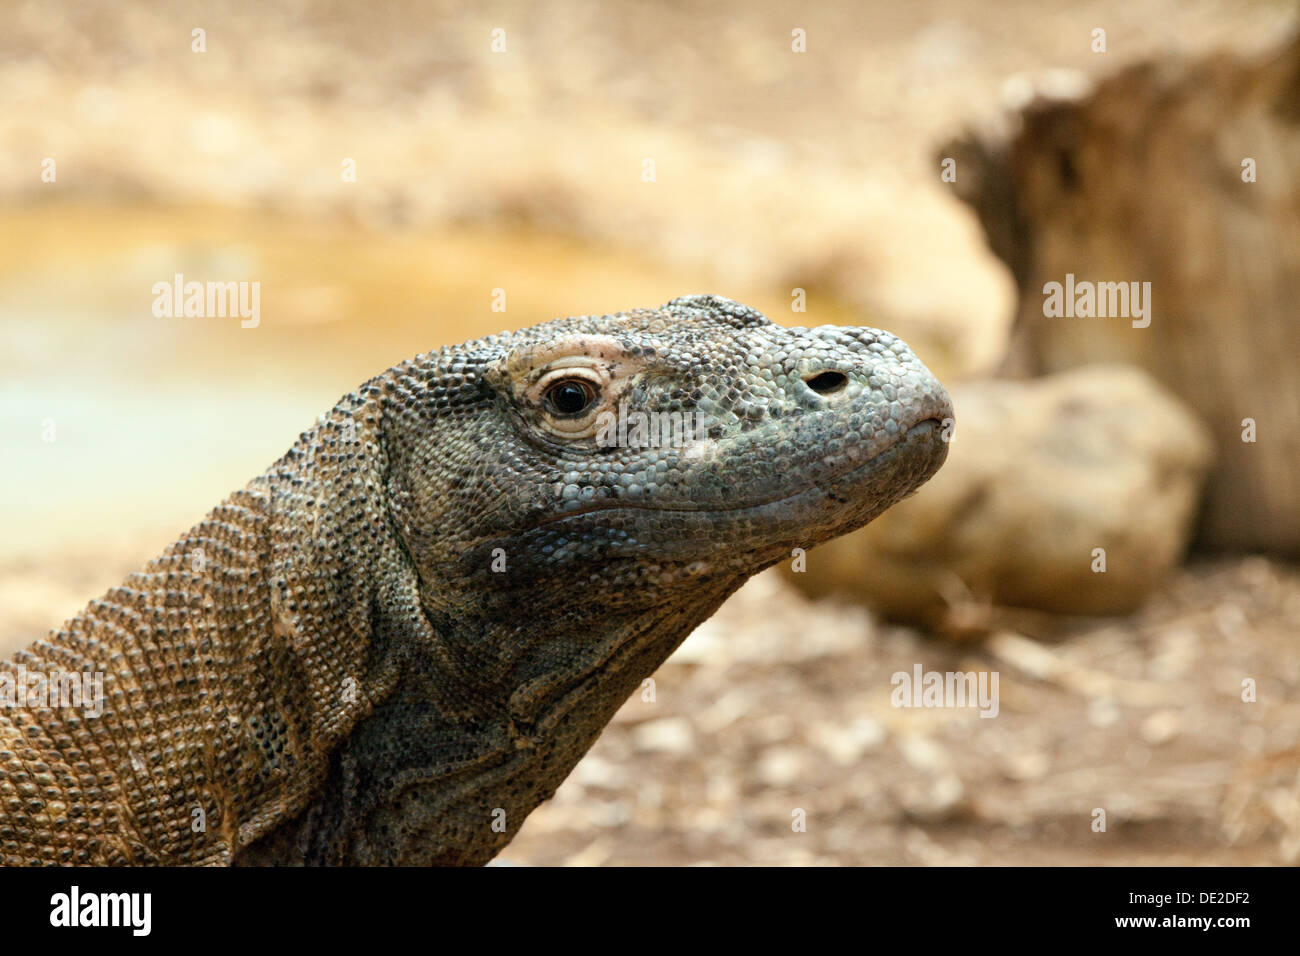 Drago di Komodo - Varanus komodoensis, noto anche come monitor di Komodo, un grande rettile; chiudere fino alla testa, Foto Stock